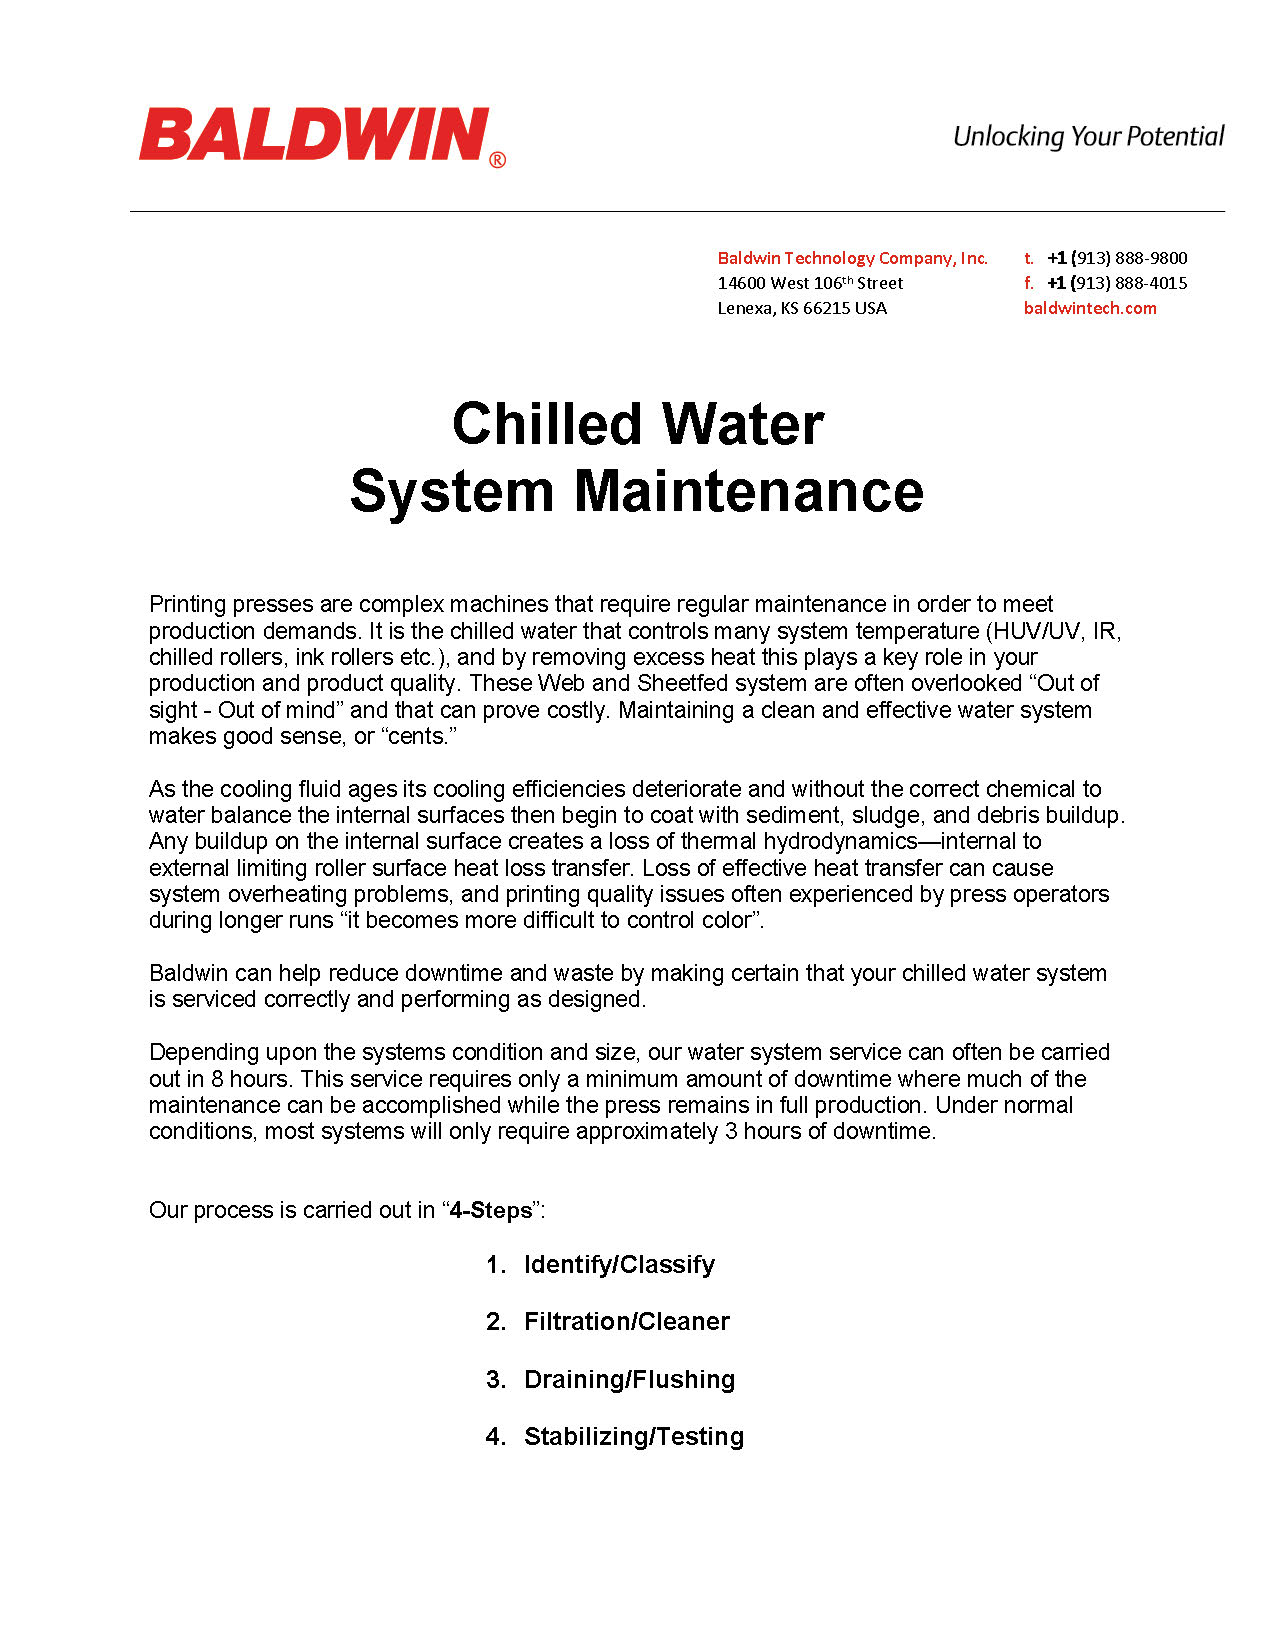 Wartung des Kaltwassersystems PDF_Seite_1.jpg